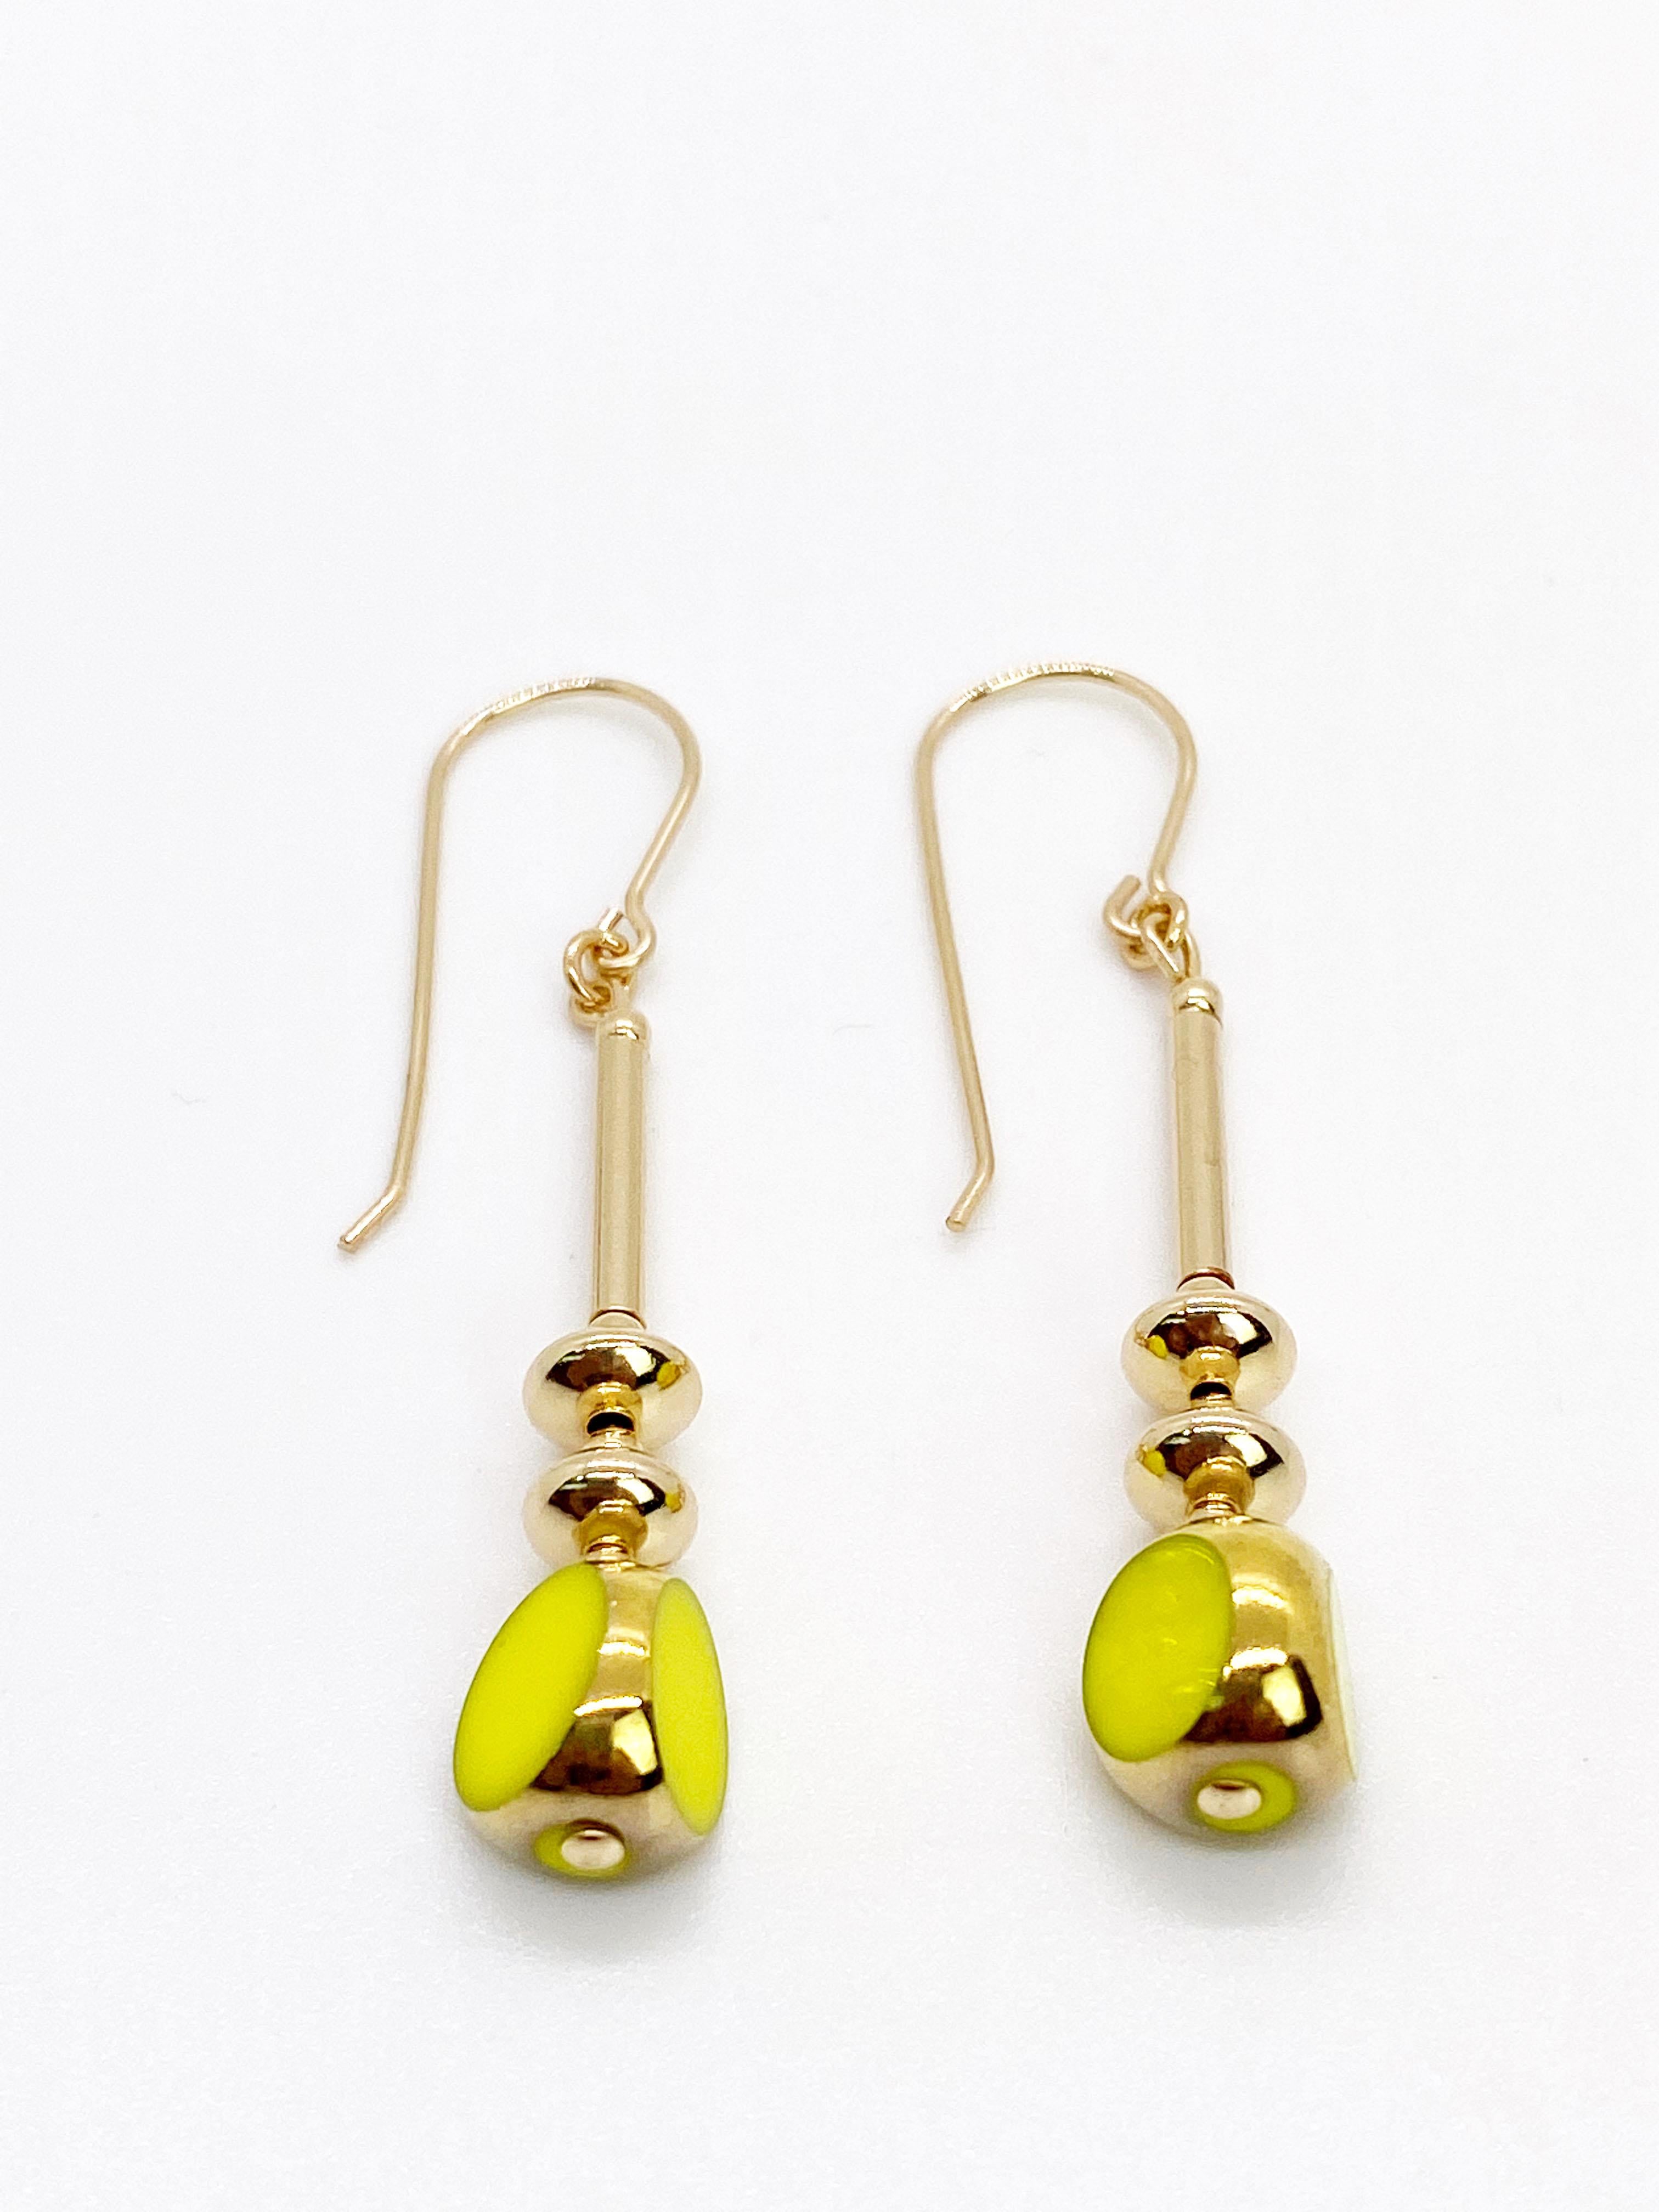 Les boucles d'oreilles sont composées chacune d'une belle et brillante perle de verre opaque Chartreuse. Les perles de verre vintage allemandes sont encadrées d'or 24K, ainsi que de perles et de fils métalliques remplis d'or.

Les perles de verre